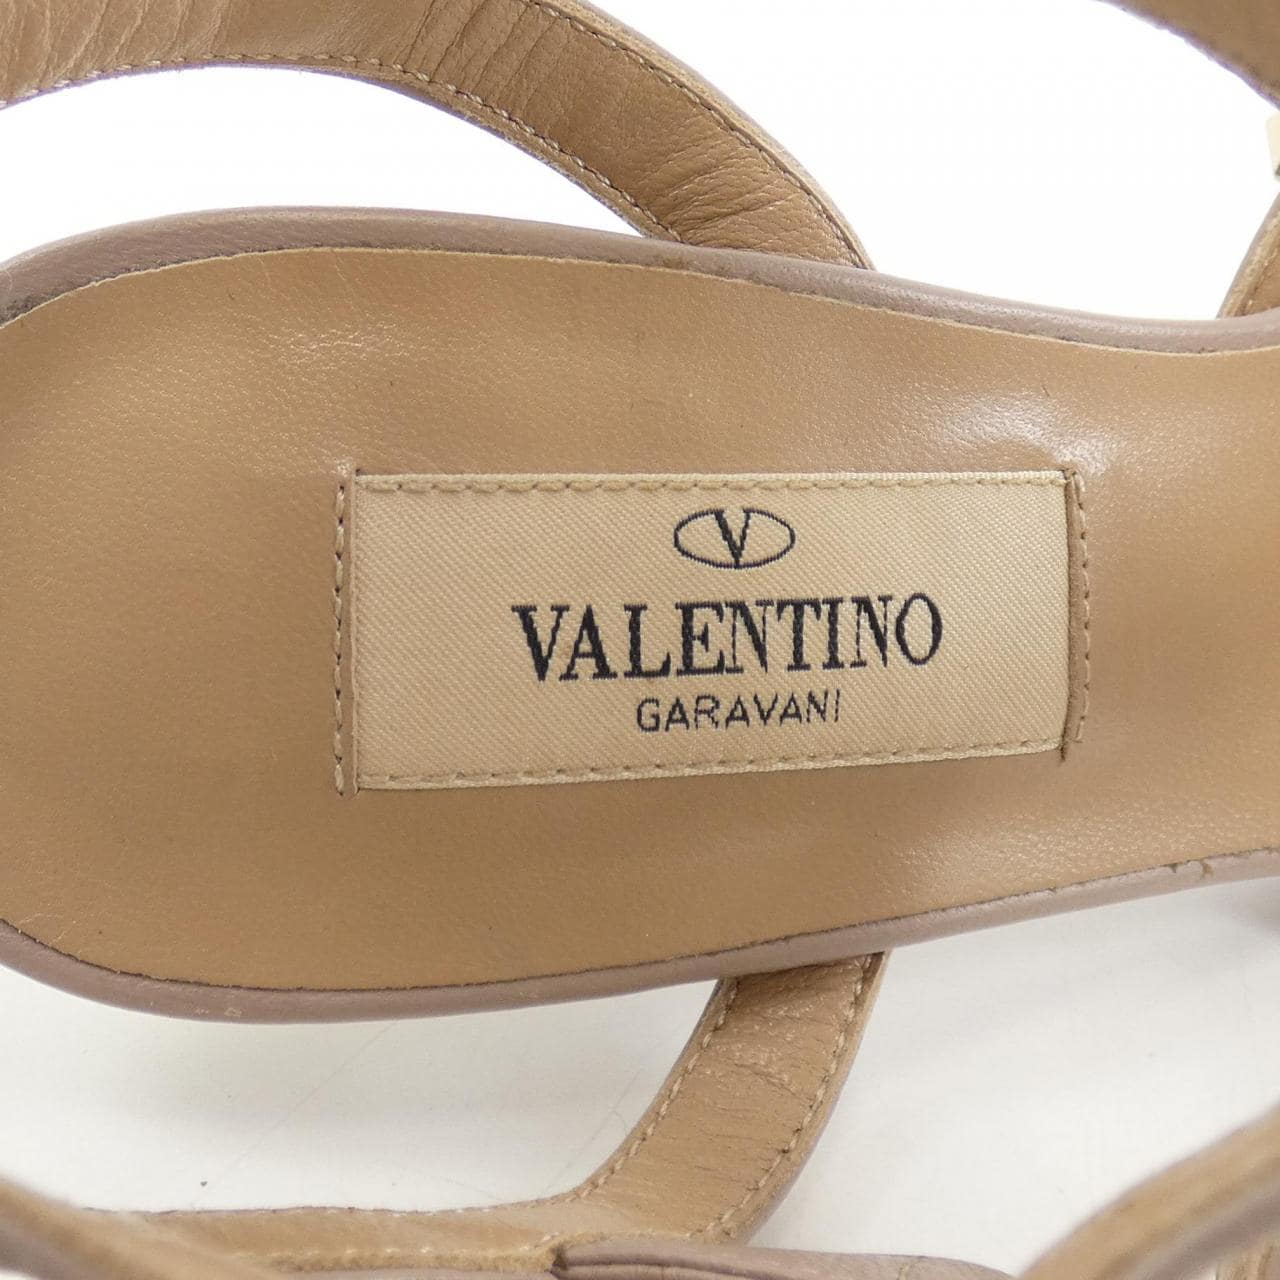 VALENTINO GARAVANI VALENTINO GARAVANI Shoes